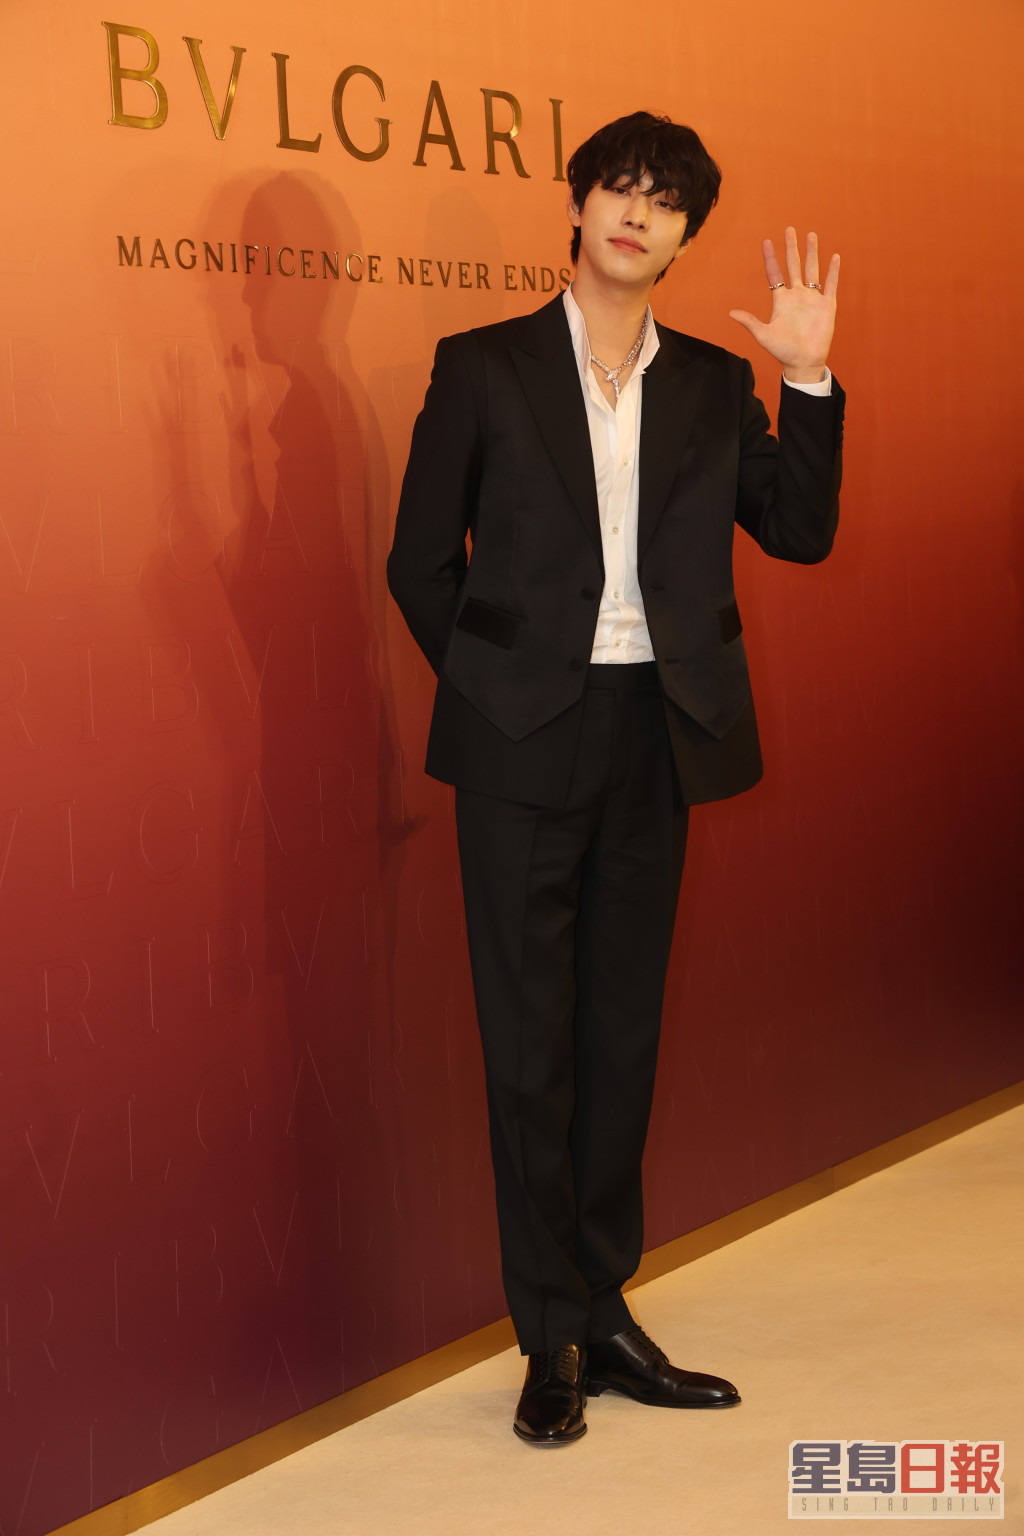 韩剧《社内相亲》、《浪漫医生金师傅3》当红男星安孝燮特地来港出席品牌活动。